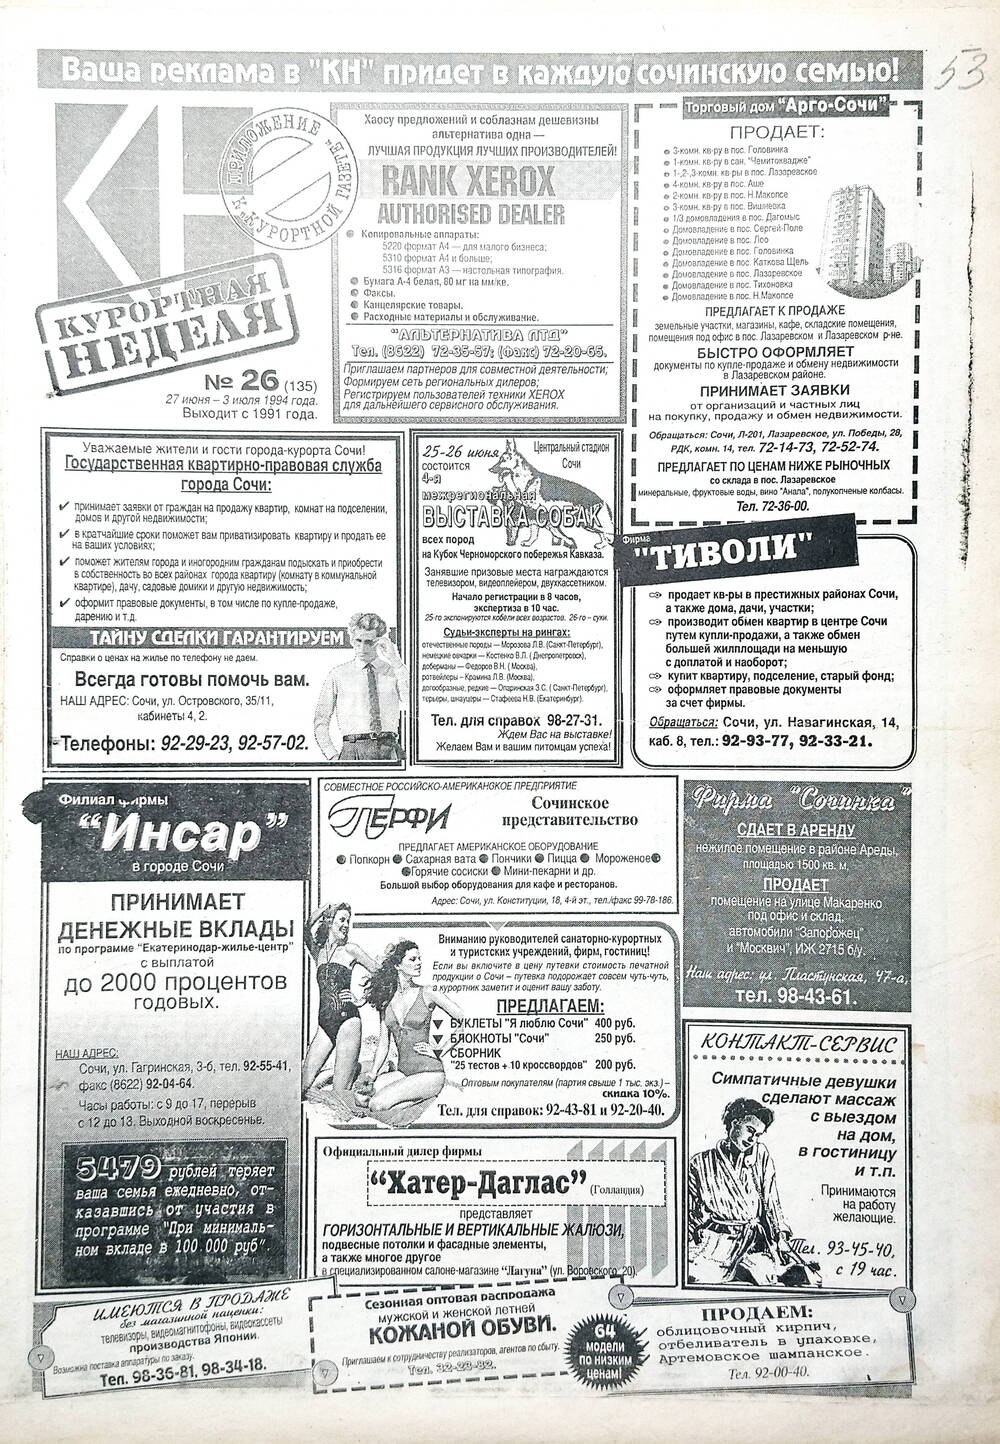 Газета еженедельная рекламно-информационная «Курортная неделя» № 26 (135), 27 июня - 3 июля 1994 г.